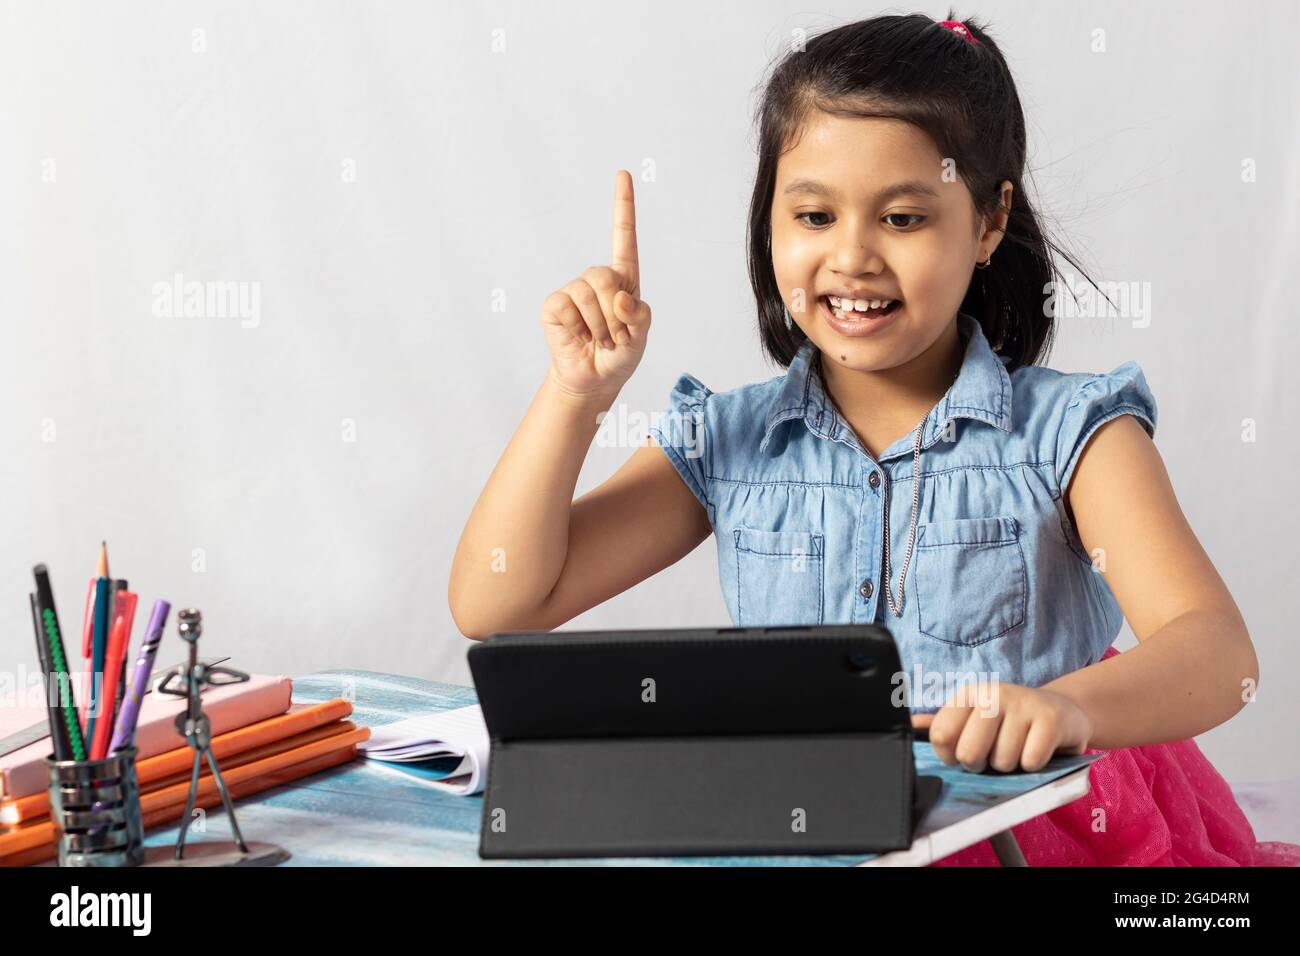 Ein hübsches indisches Mädchen, das am Online-Kurs mit Tablet auf weißem Hintergrund teilnimmt Stockfoto